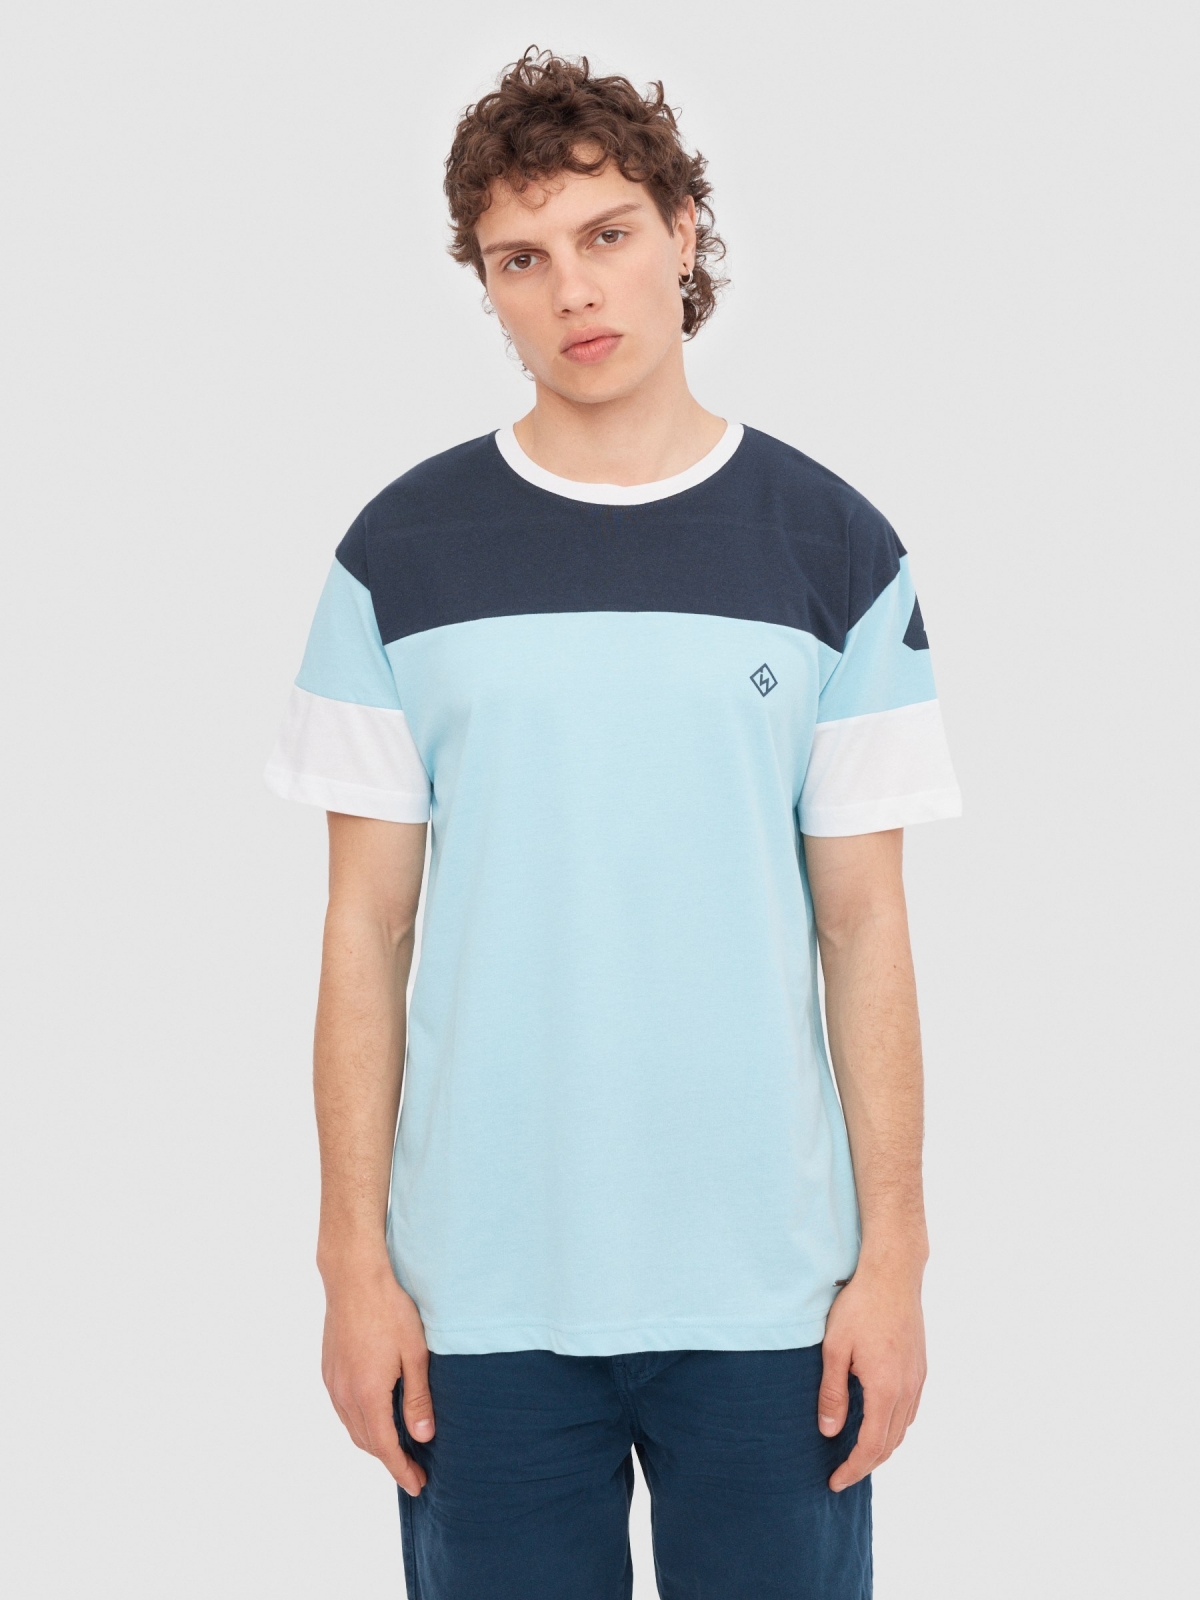 T-shirt desportiva com textura azul claro vista meia frontal